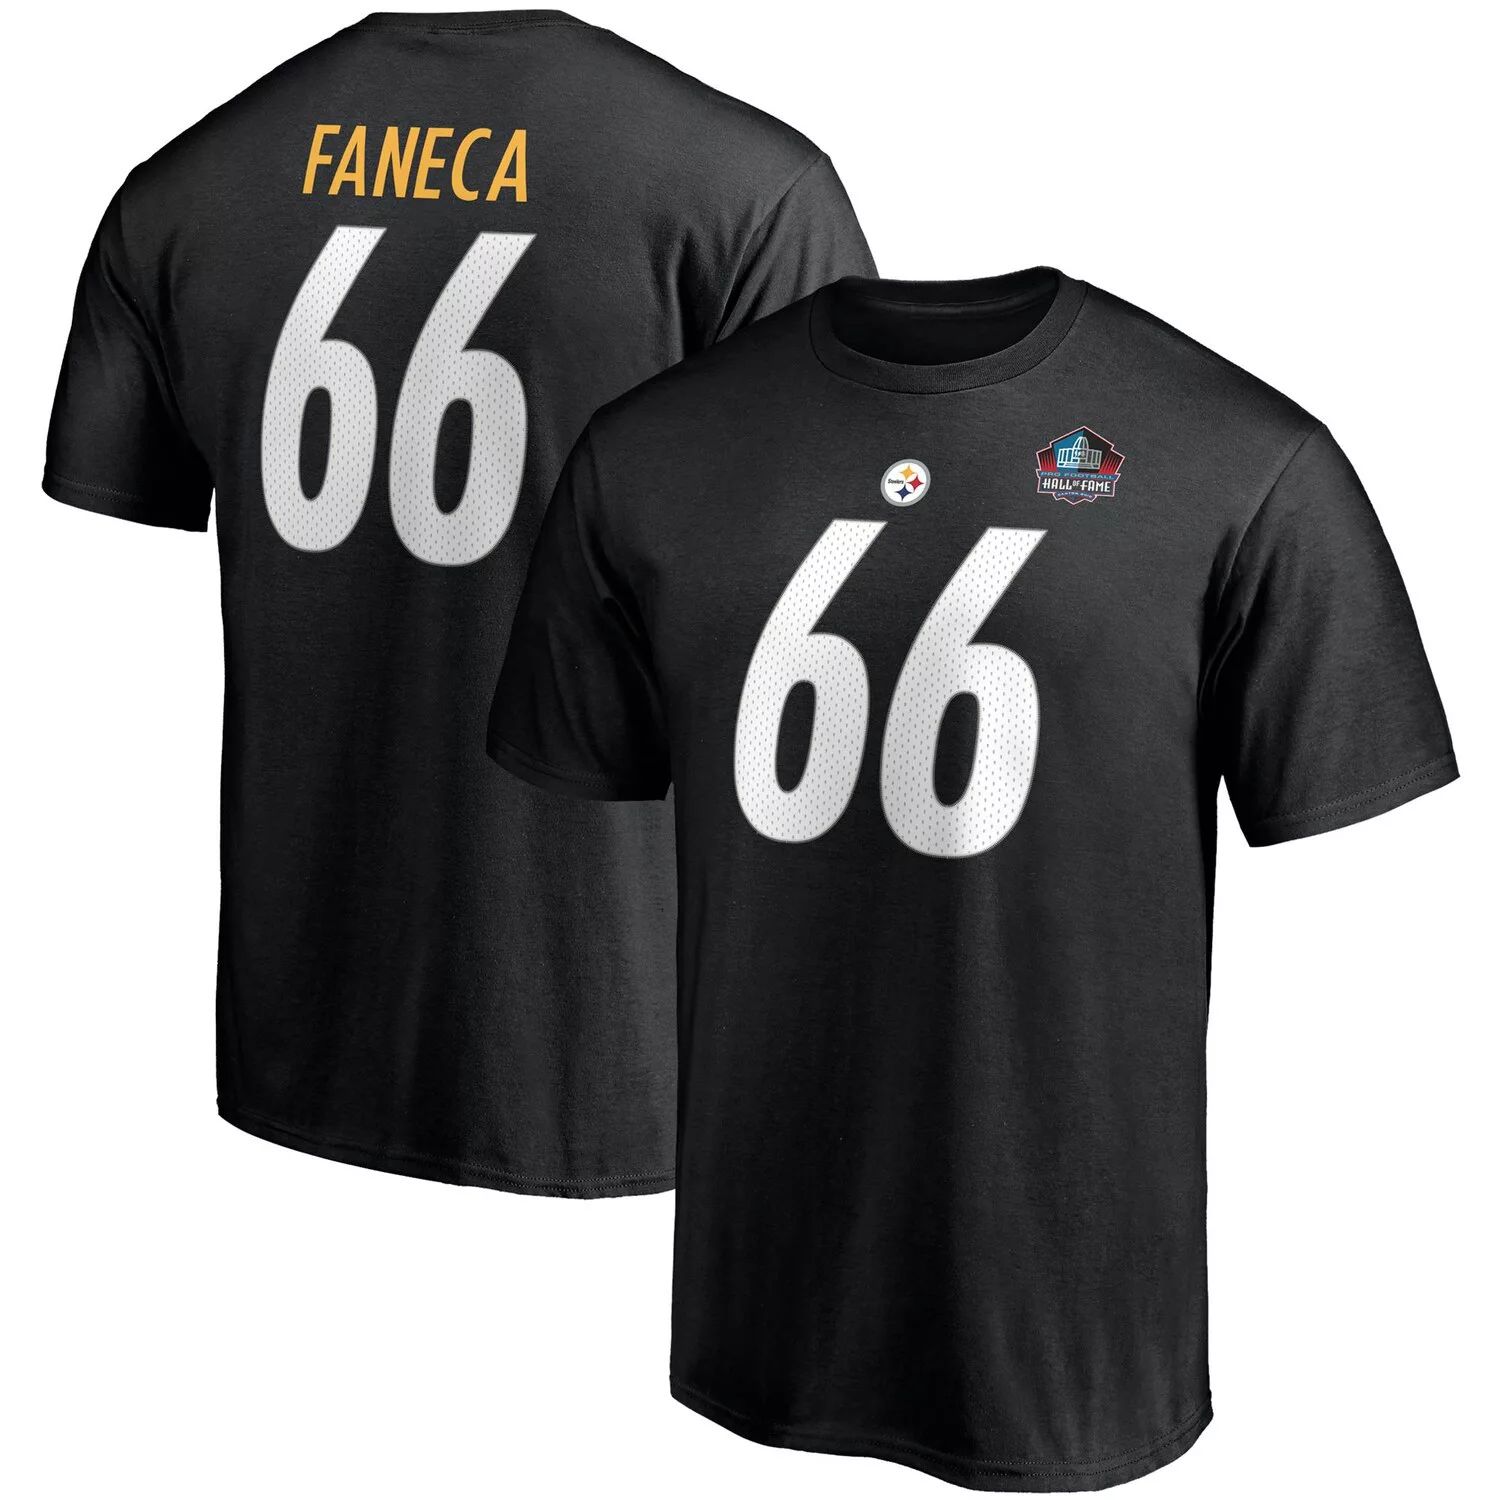 Мужская футболка Fanatics с брендом Alan Faneca, черная, Питтсбург Стилерс, Зал славы НФЛ, класс 2021, футболка с именем и номером